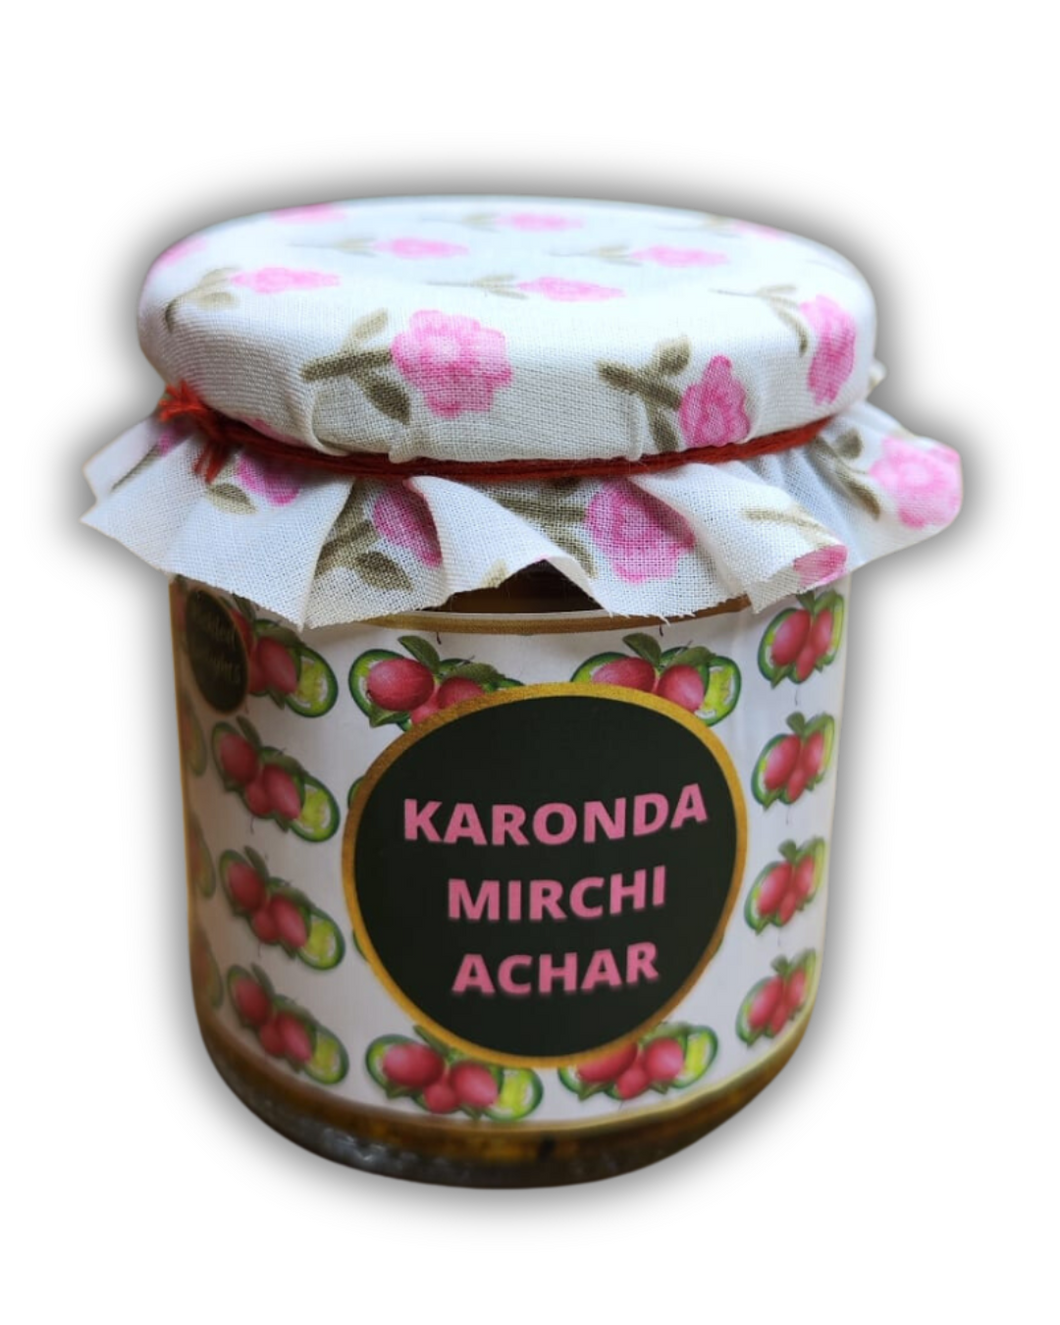 Karonda Mirchi Achar